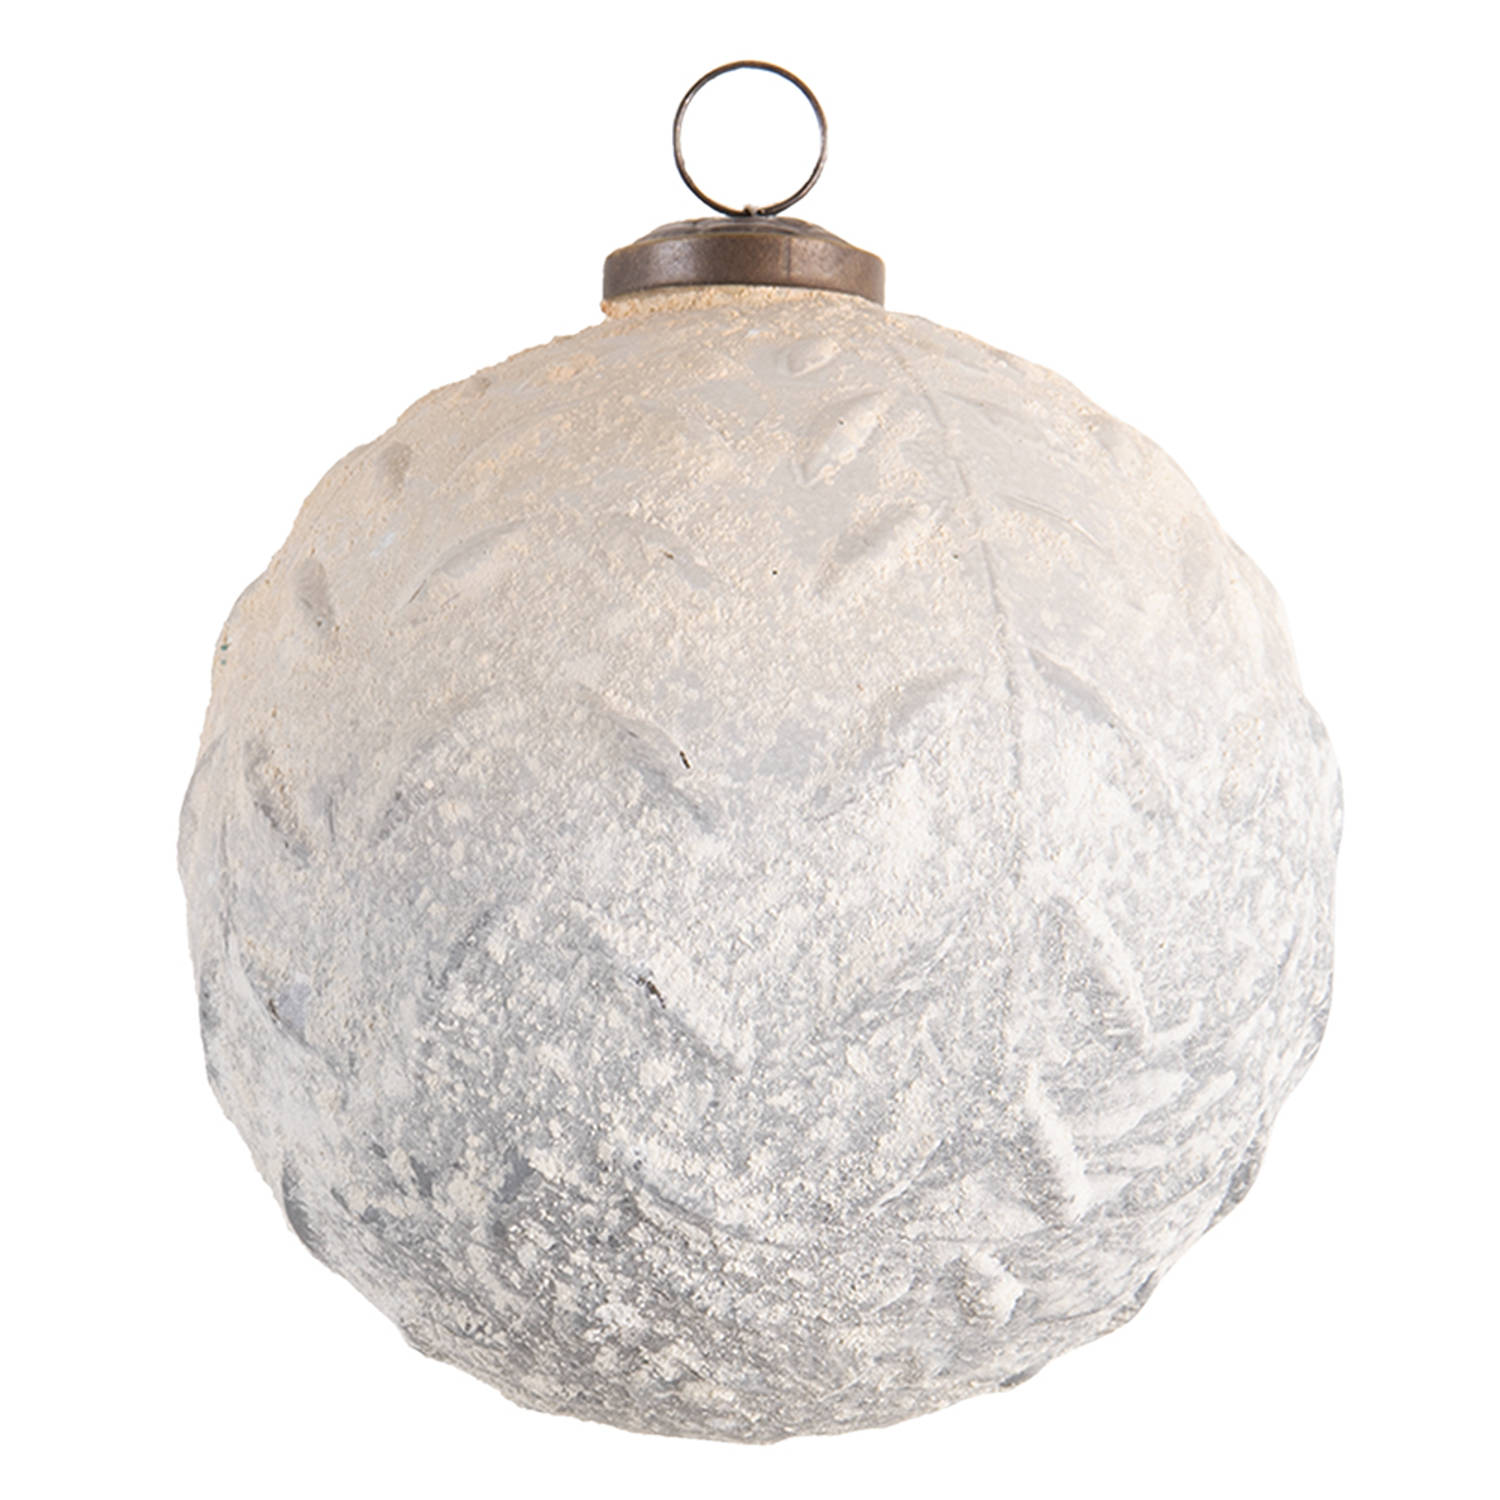 HAES DECO - Kerstbal Groot XL - Formaat Ø 12 cm - Kleur Wit - Materiaal Glas - Kerstversiering, Kerstdecoratie, Decoratie Hanger, Kerstboomversiering